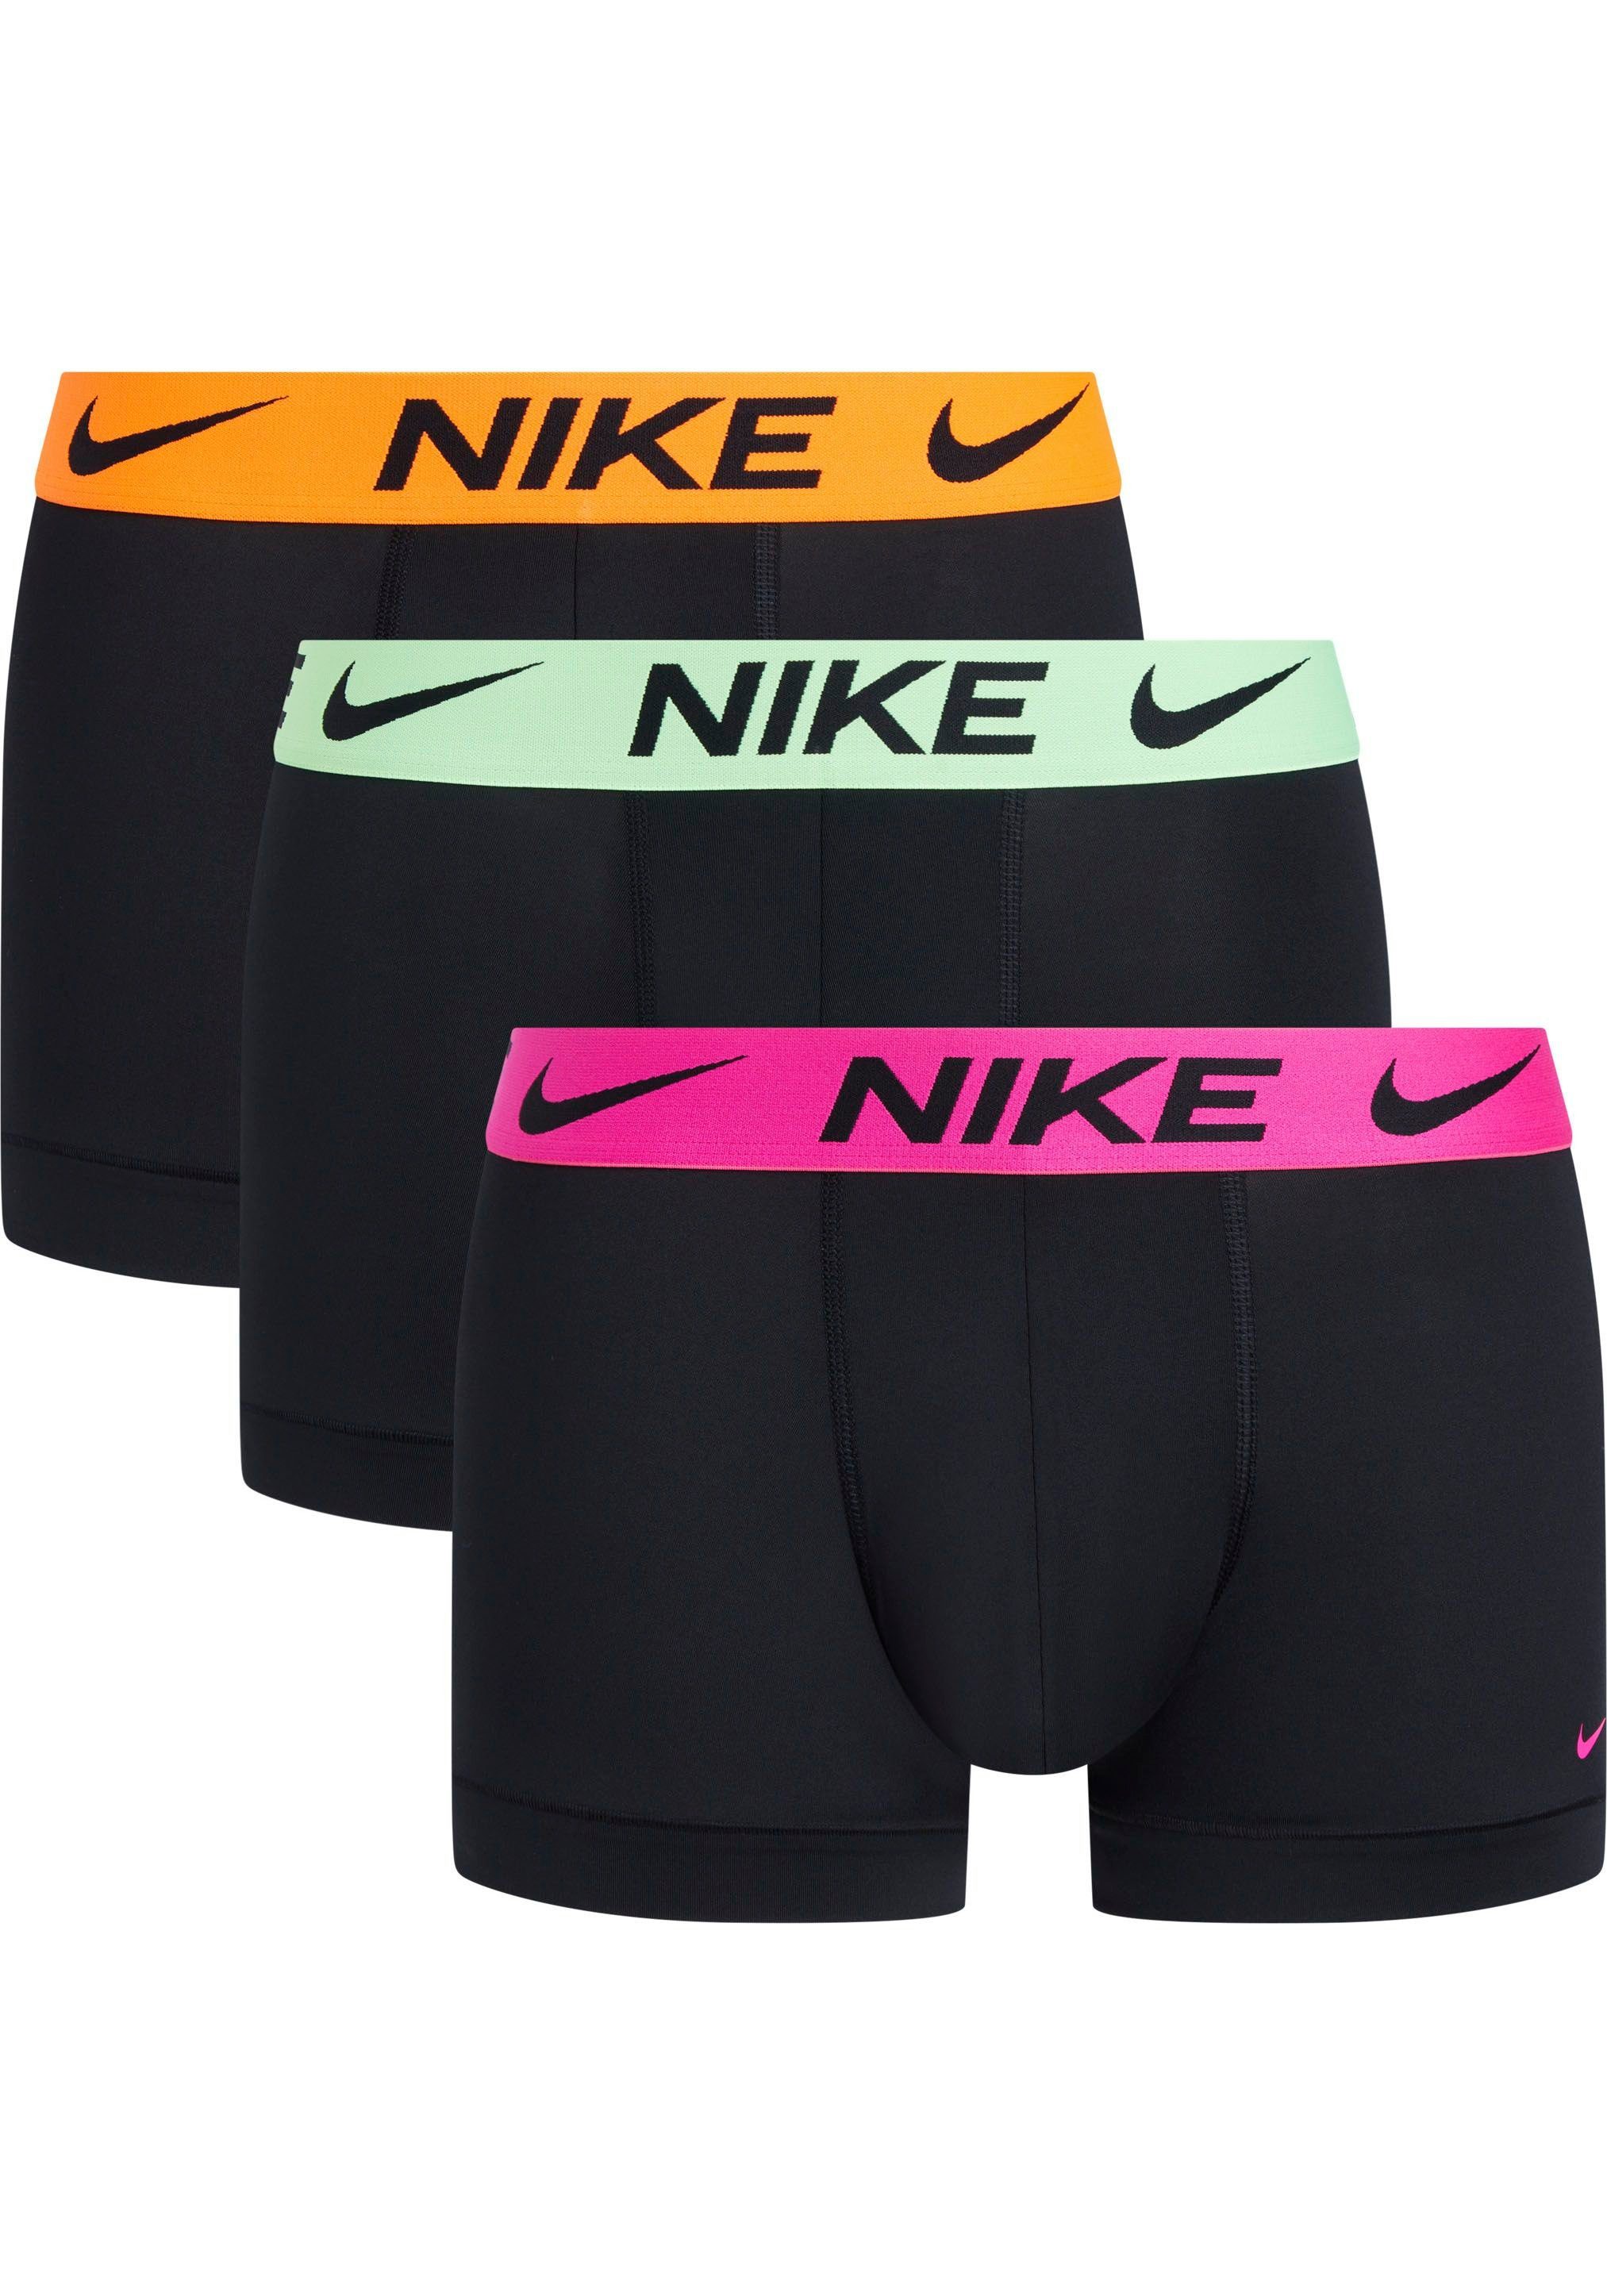 NIKE Underwear Trunk TRUNK 3PK (Packung, 3er-Pack) mit NIKE Logo-Elastikbund (3 Stück) | Boxer anliegend